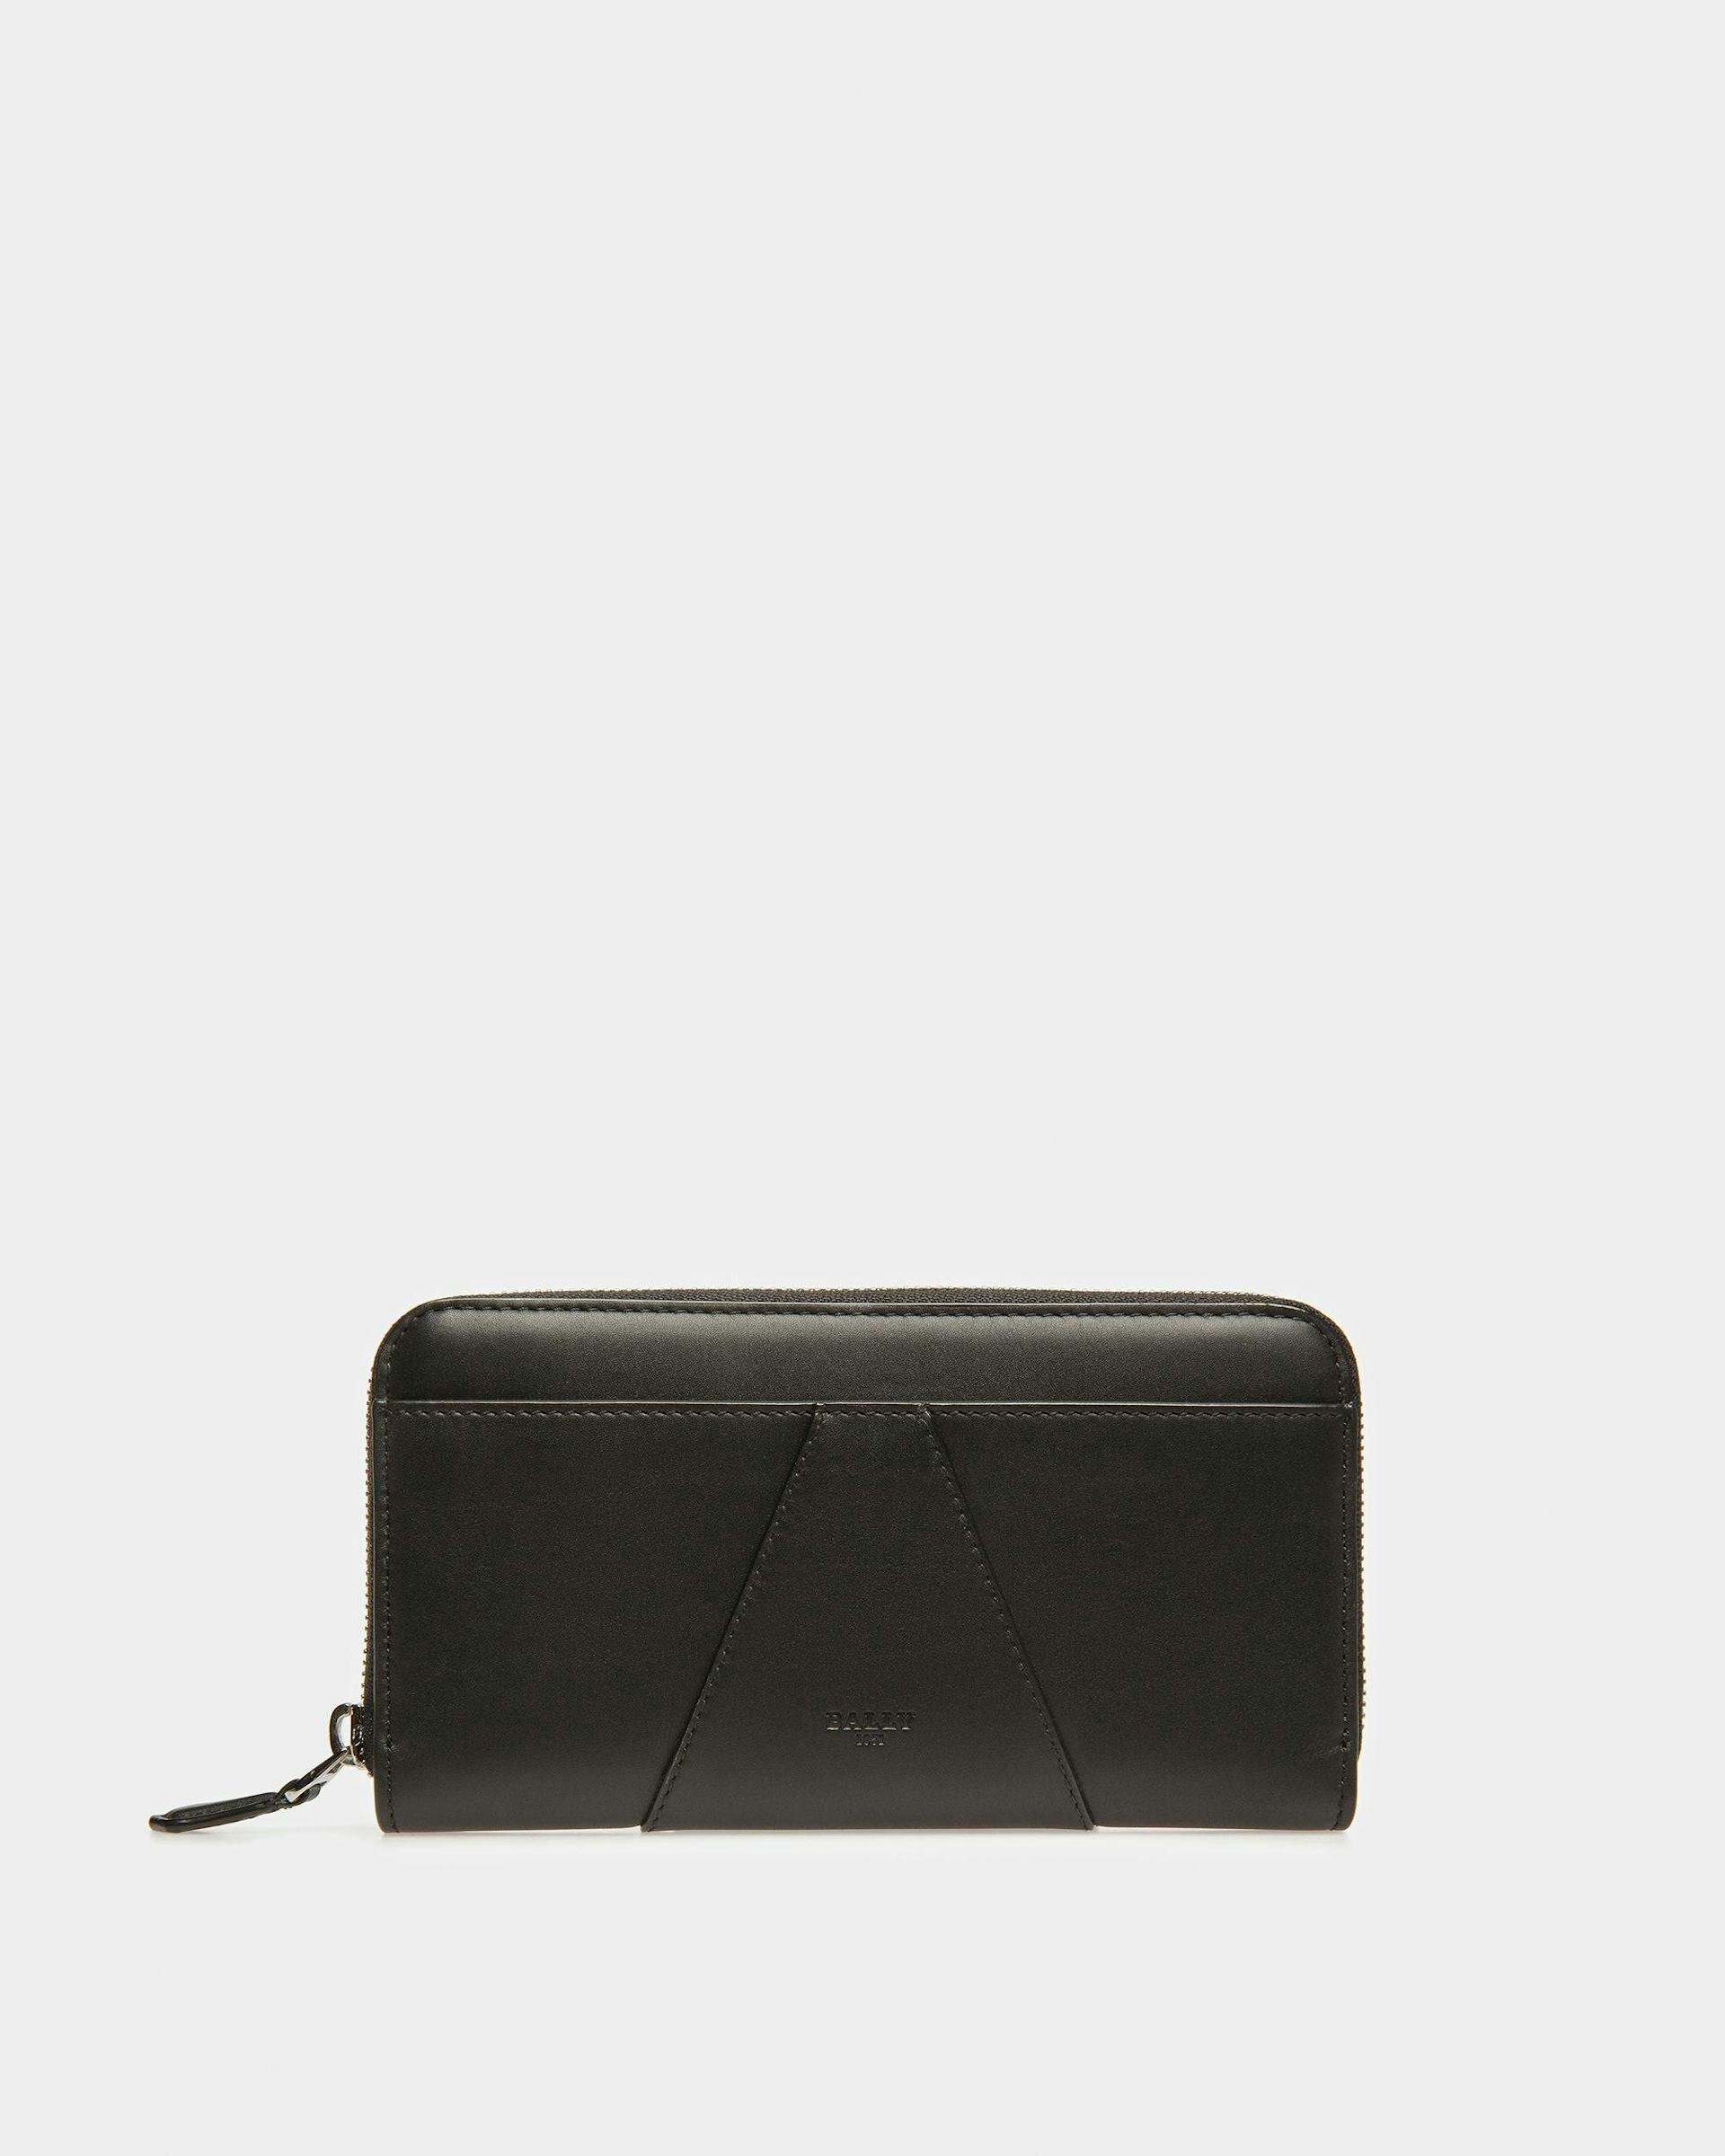 Avenor Leather Wallet In Black - Women's - Bally - 01